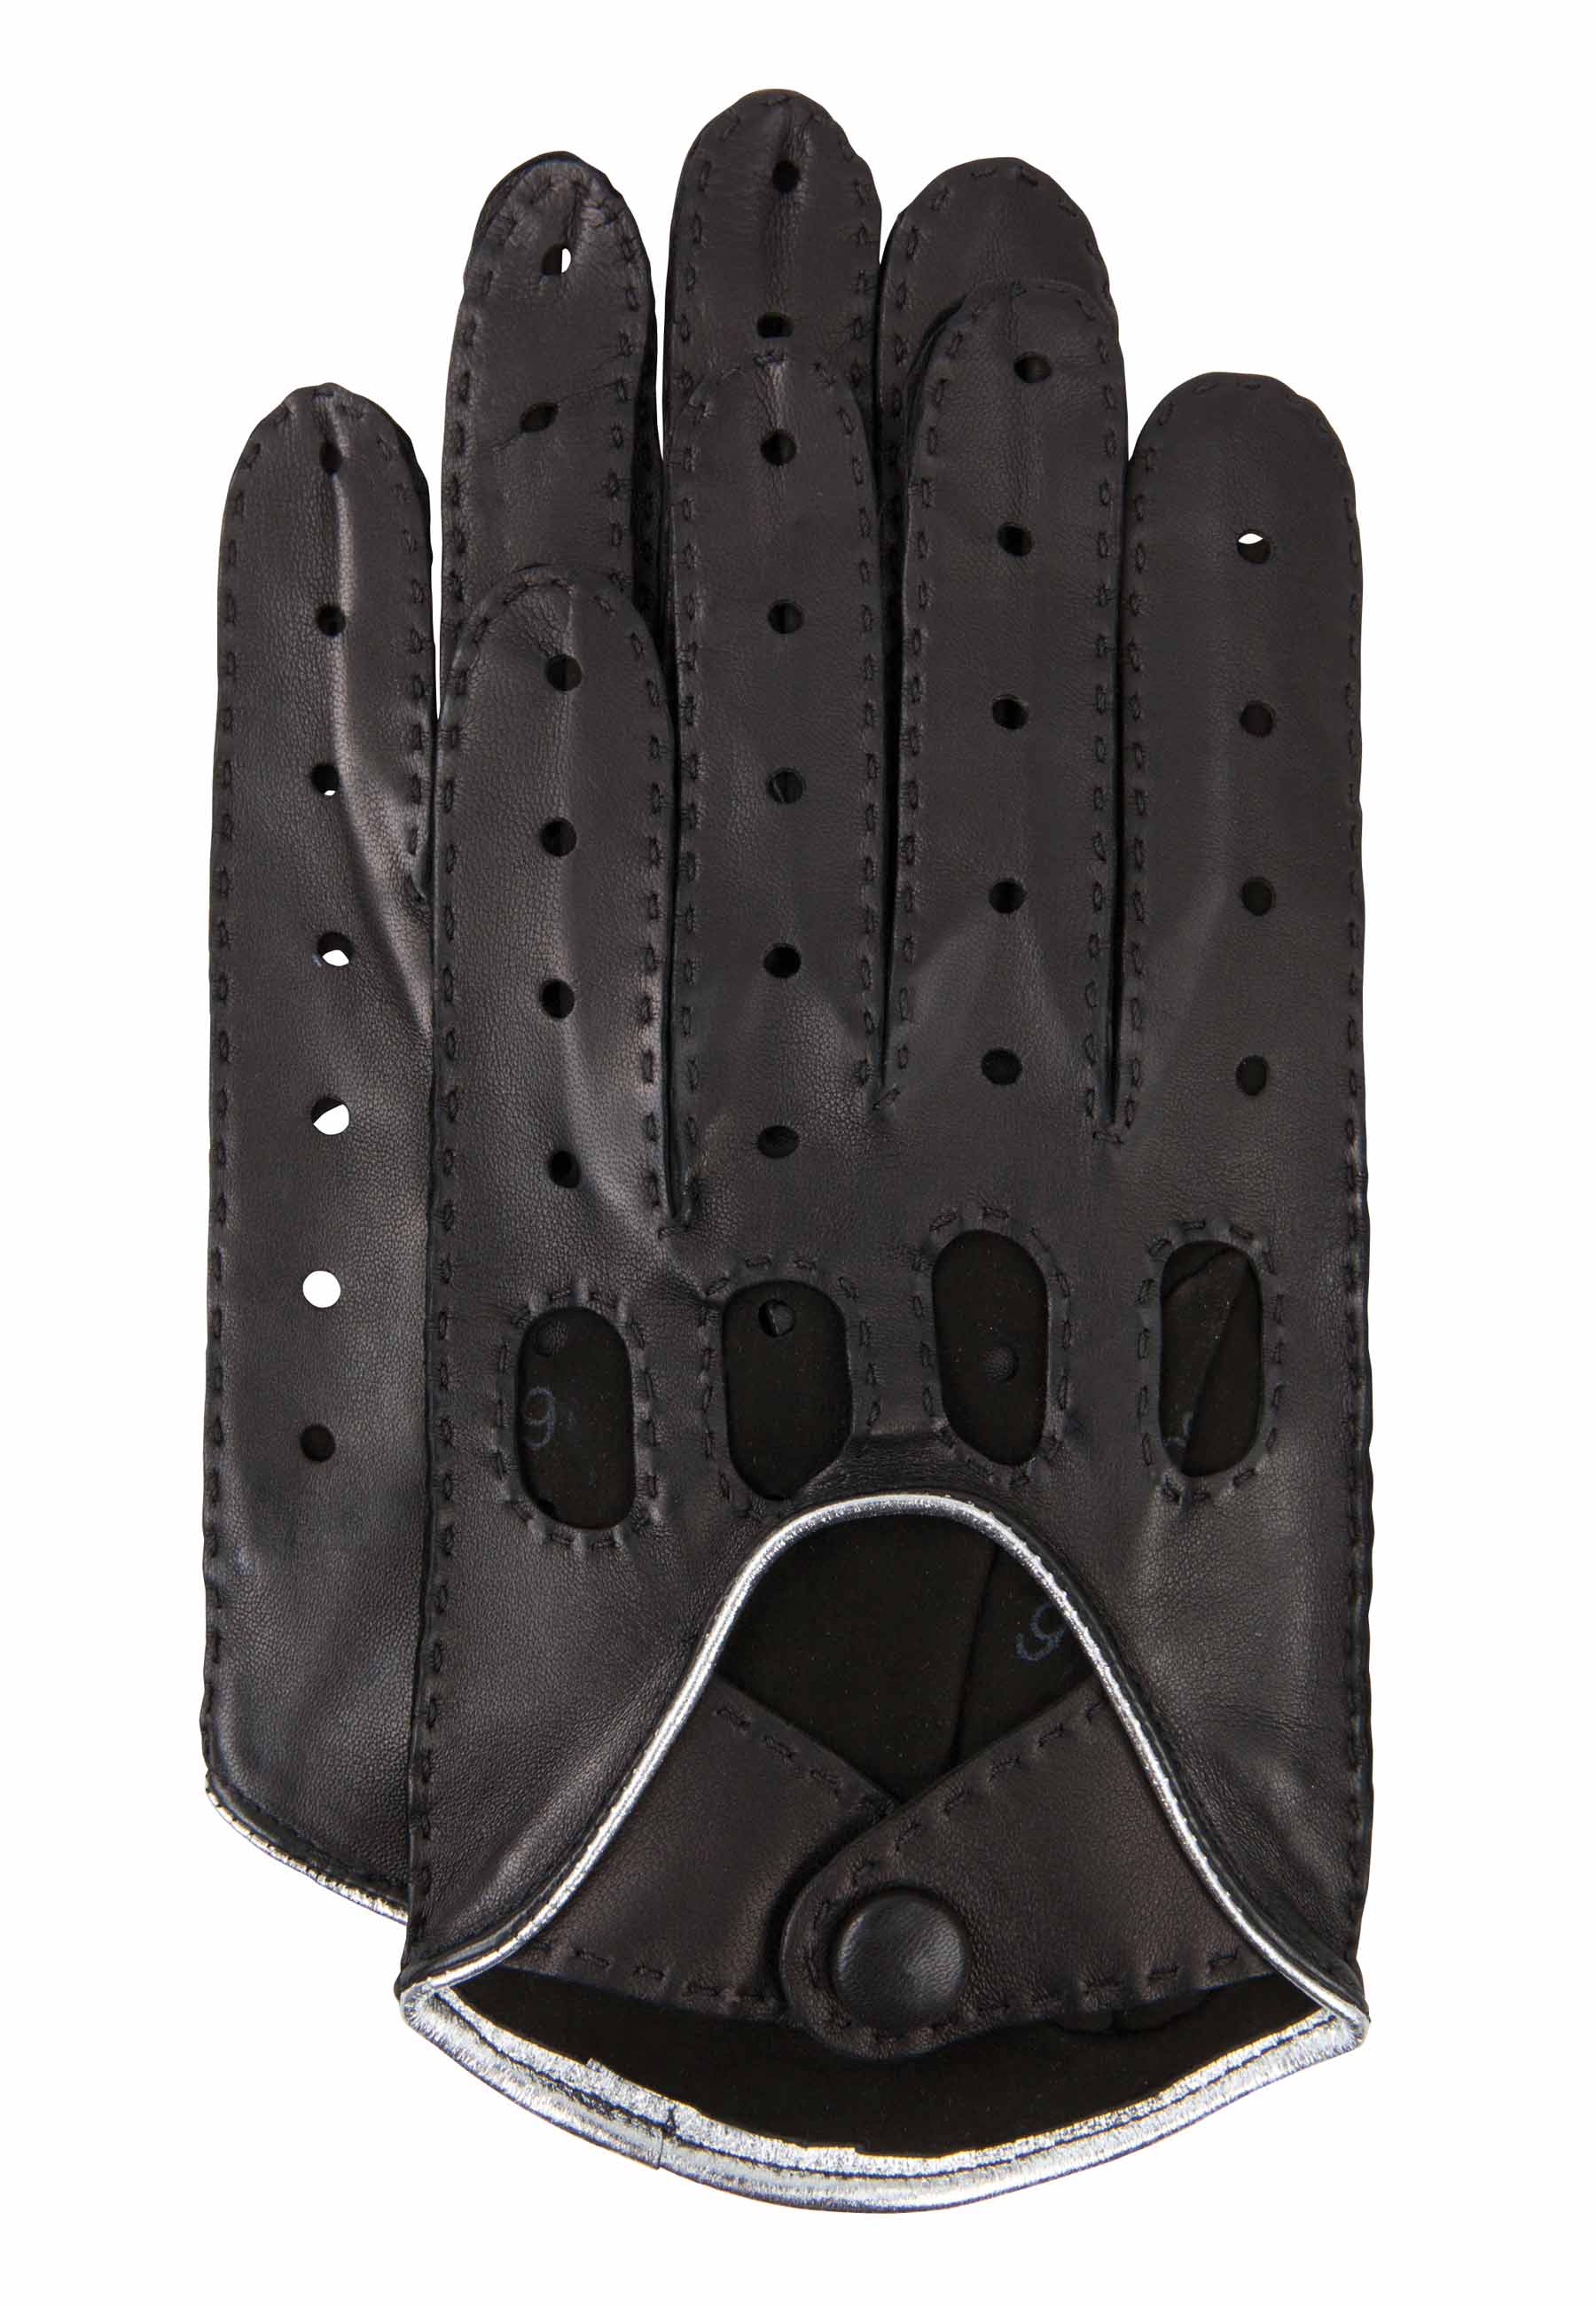 Ausgefallene Autofahrer-Herrenhandschuhe aus von GRETCHEN mygretchen.com echtem | Leder